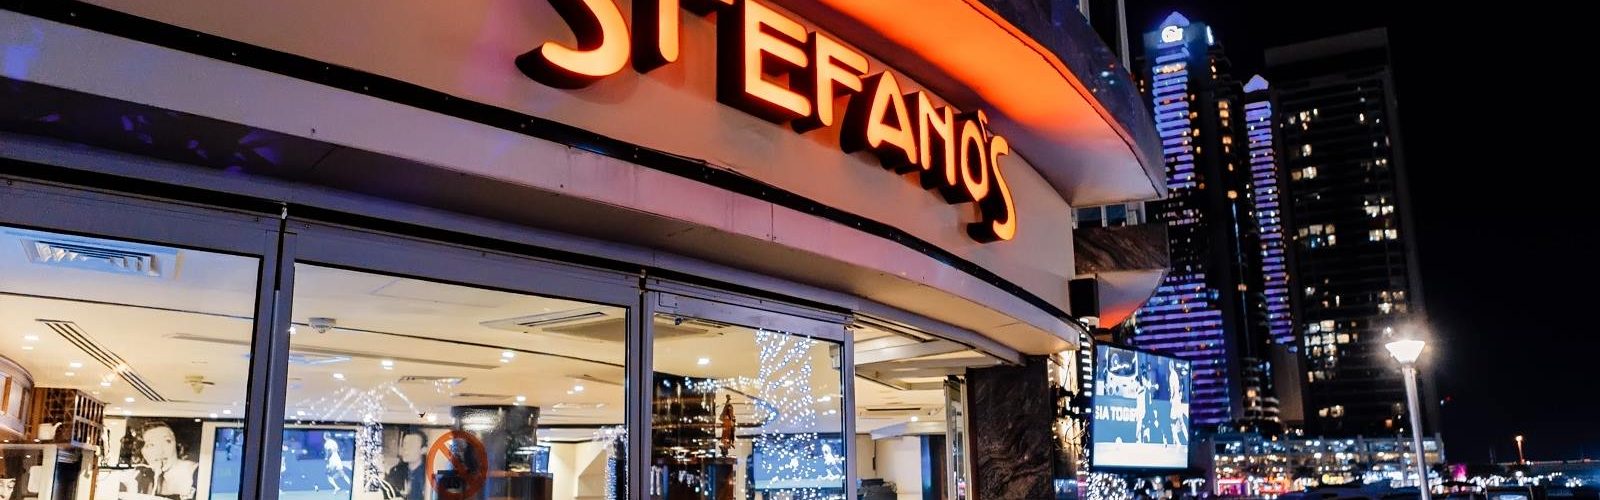 ستيفانو Stefano's